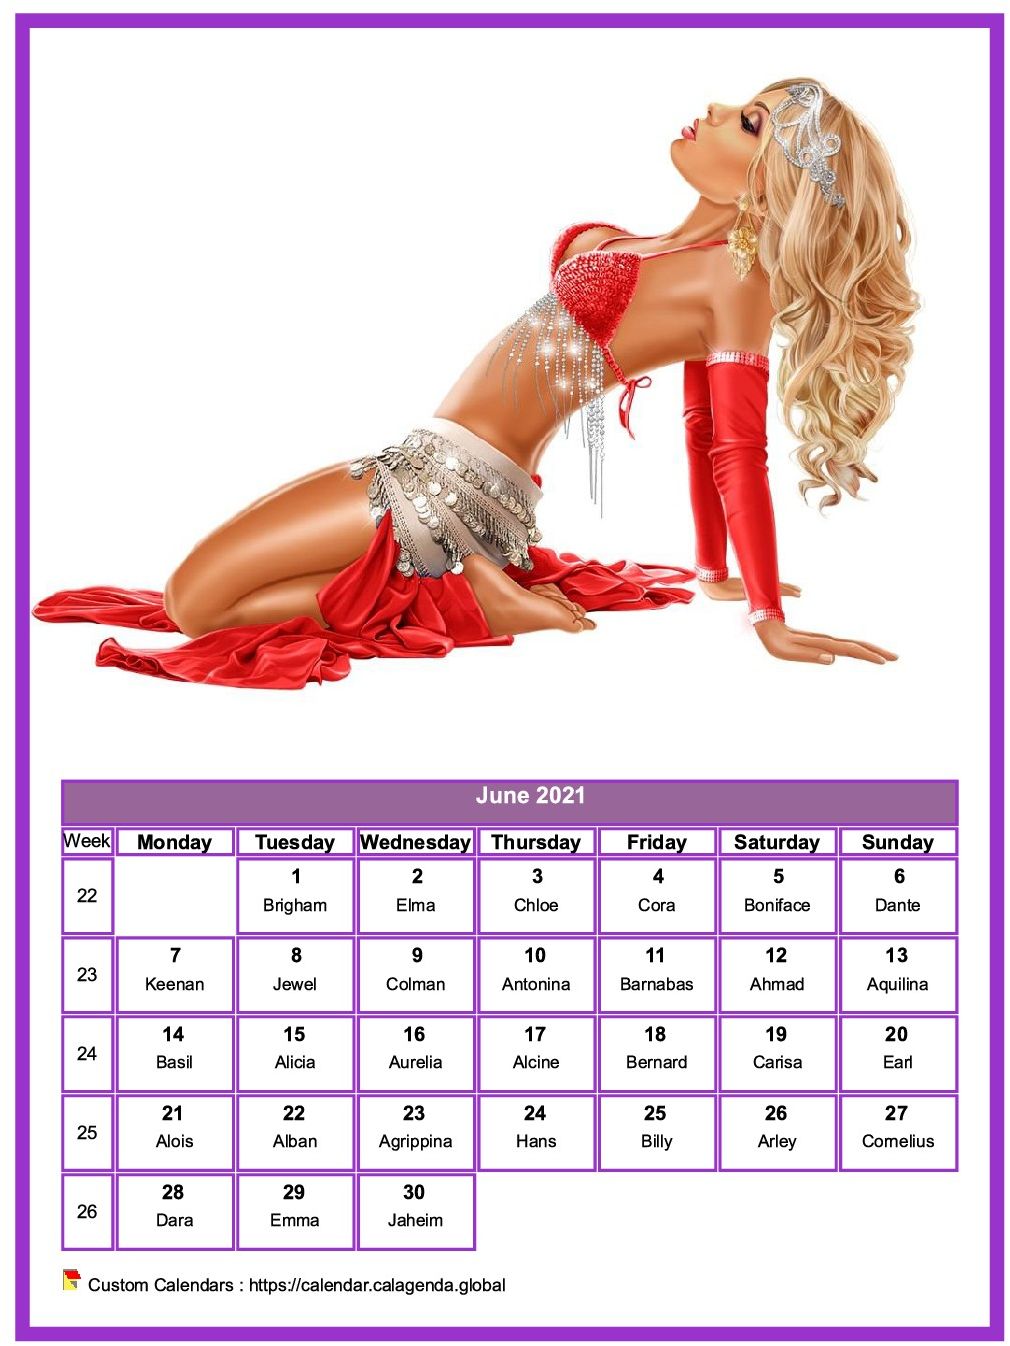 Calendar June 2021 women